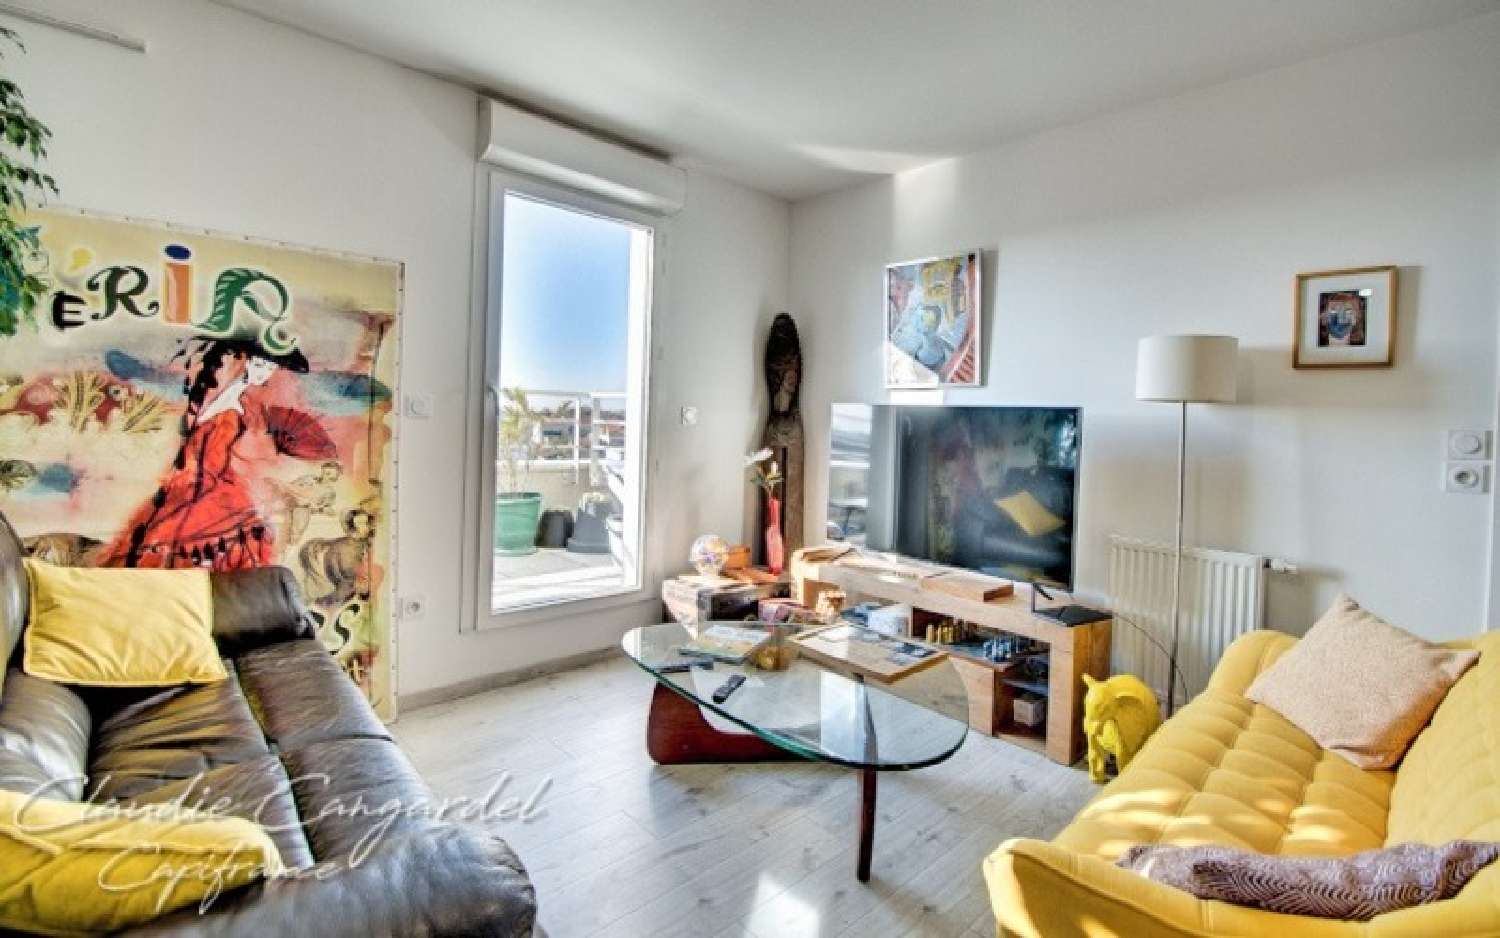  à vendre appartement La Rochelle Charente-Maritime 2